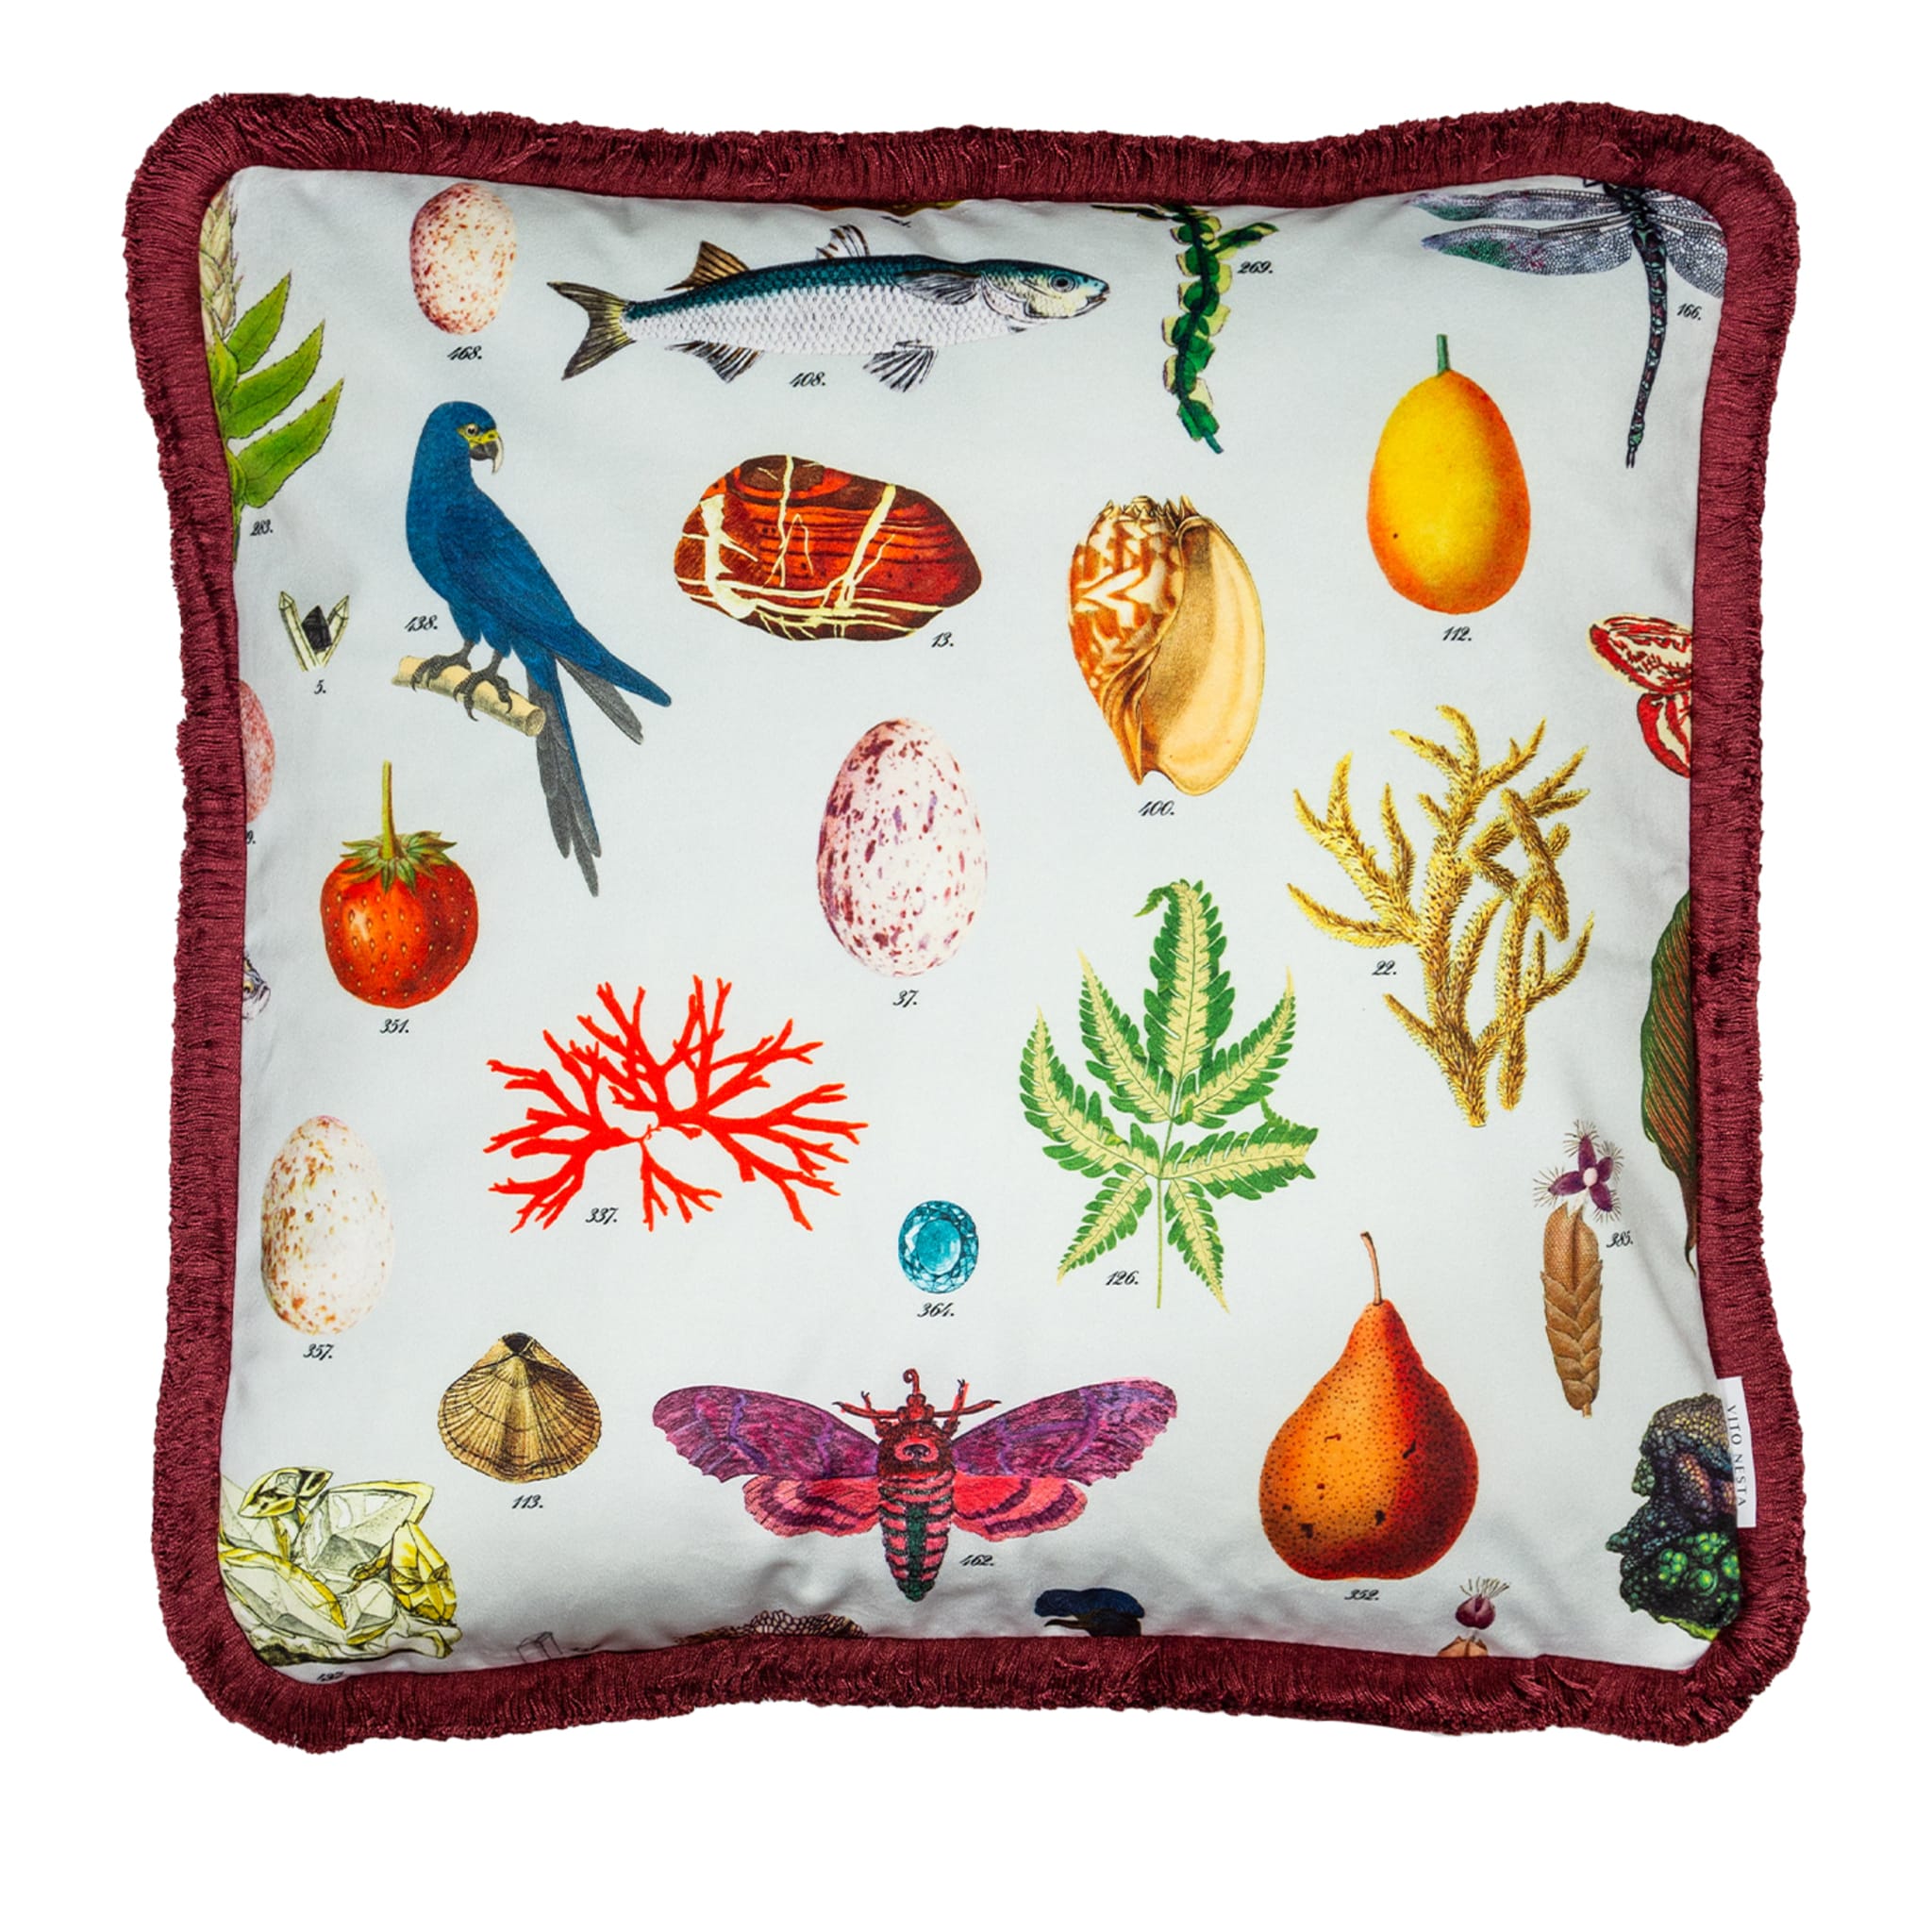 Cabinet De Curiosités Velvet Cushion With Natural Elements #1 - Main view